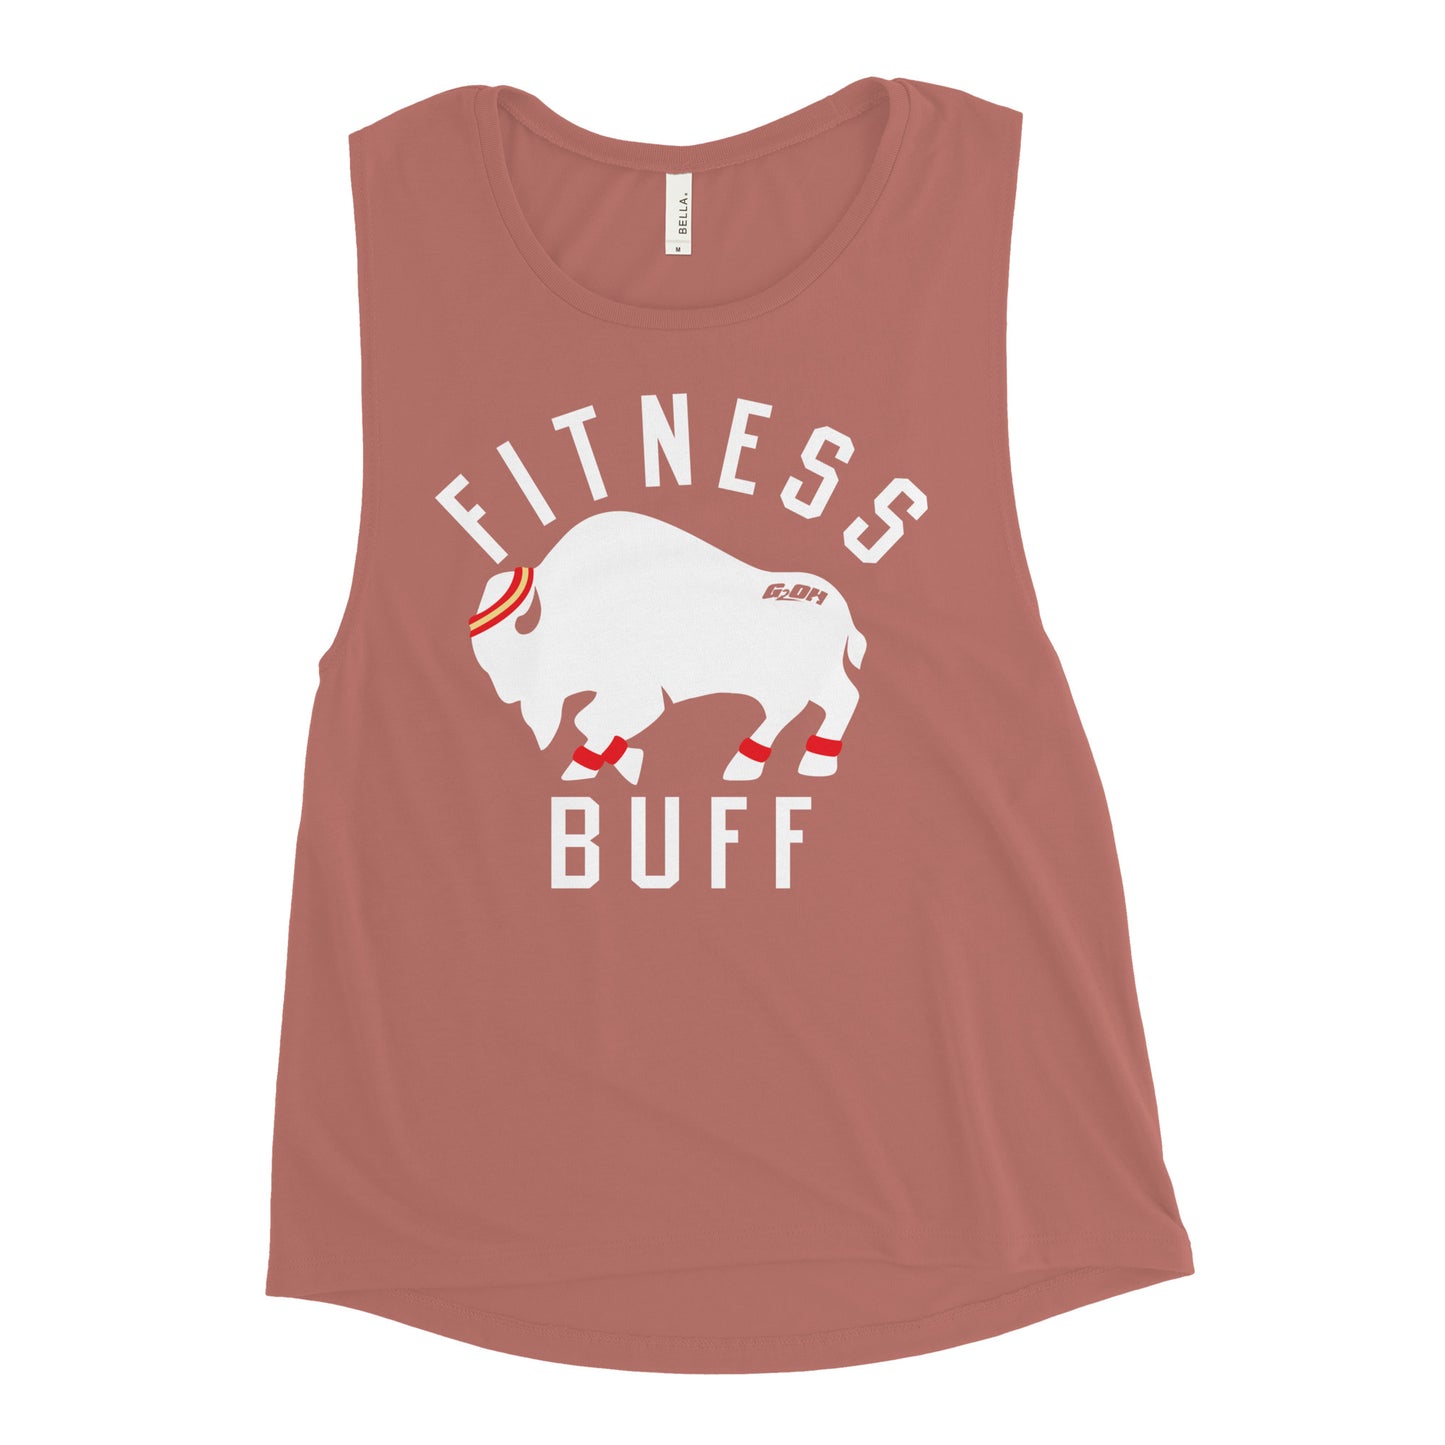 Fitness Buff Women's Muscle Tank